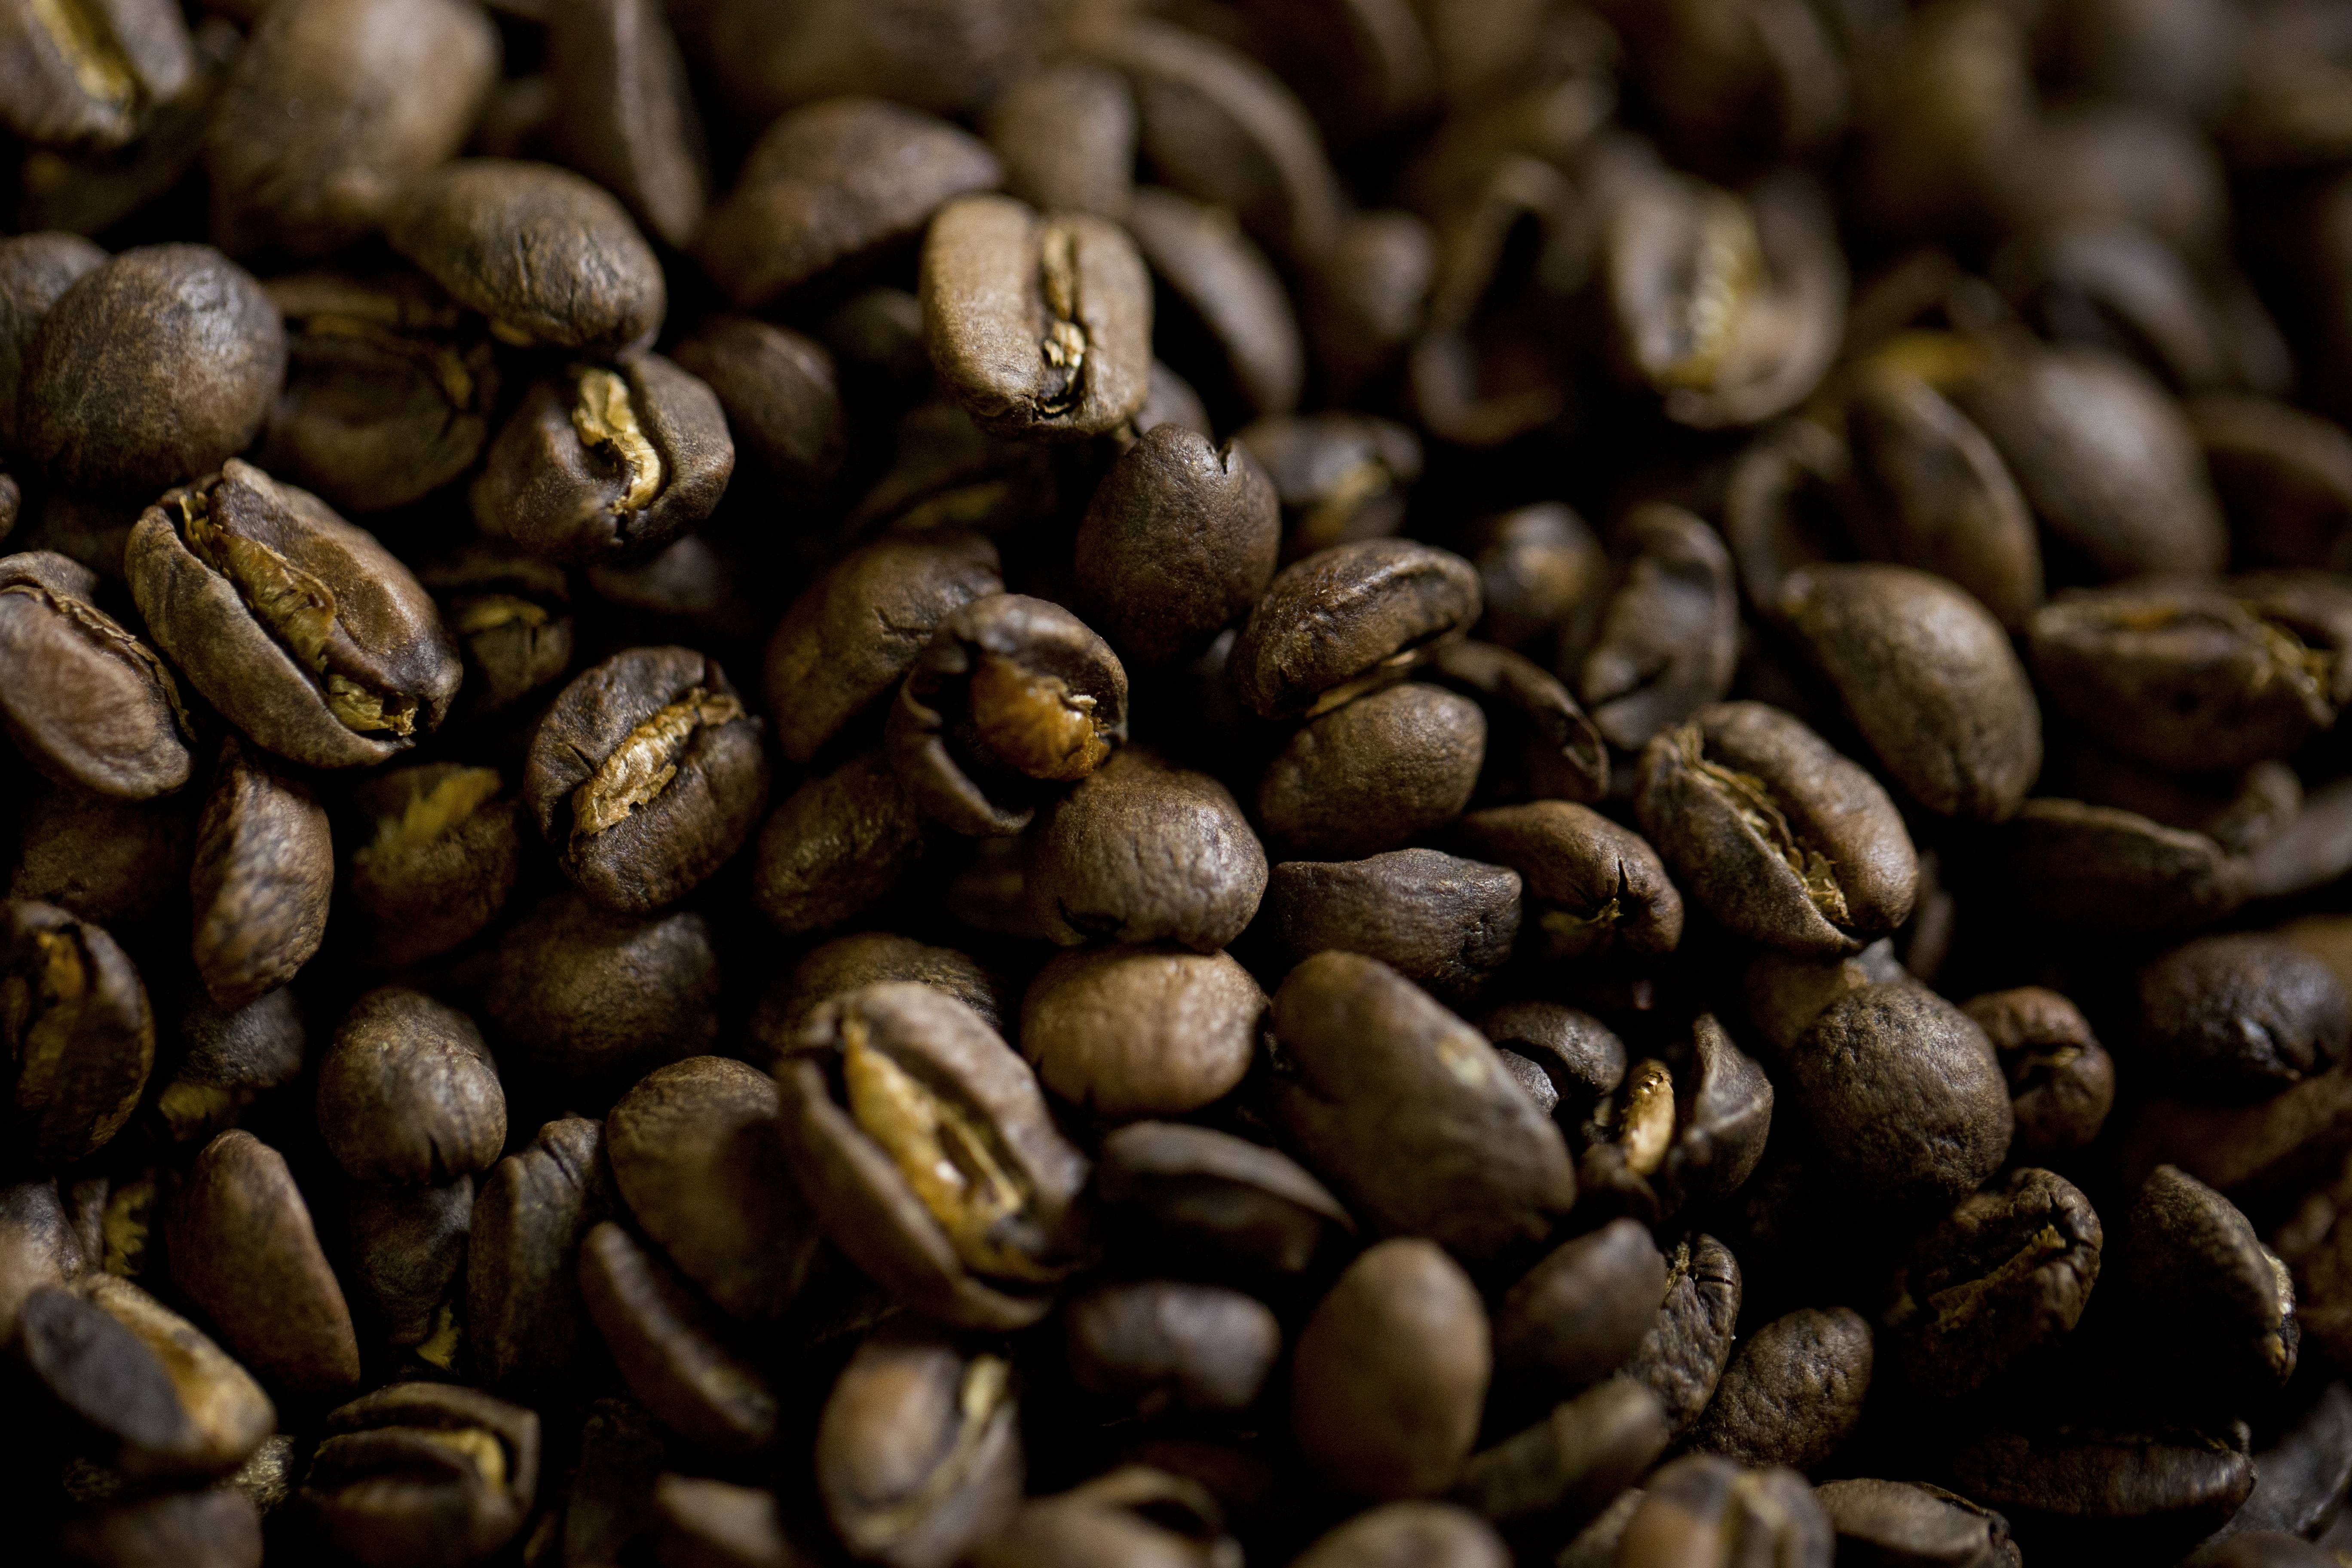 Крепость кофе: классификация, описание и виды, степень обжарки, вкусовые качества